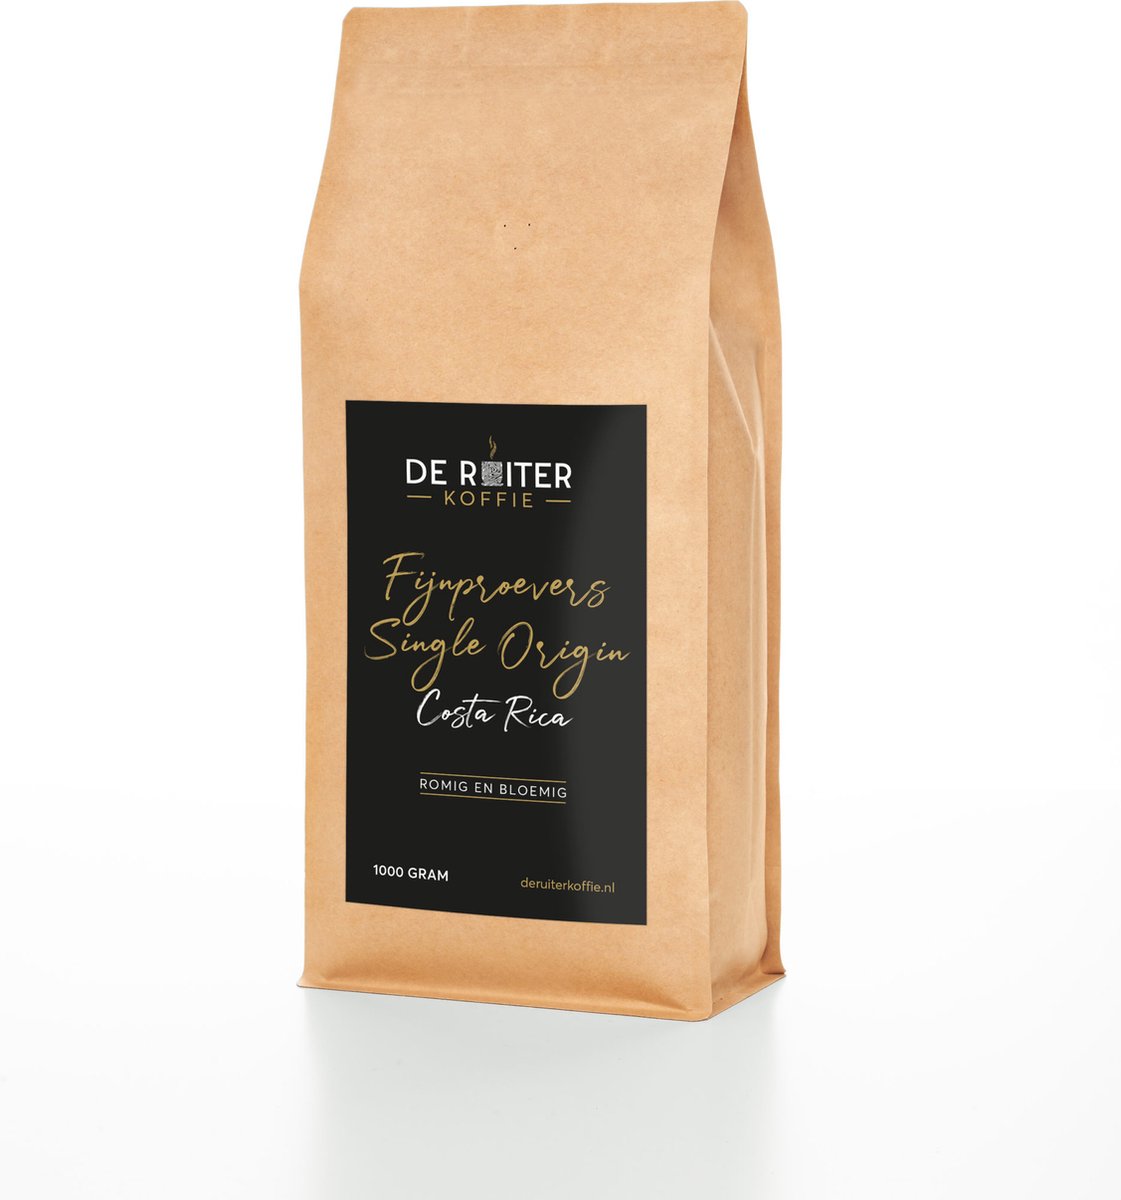 De Ruiter Koffie - Verse koffiebonen - Fijnproevers Single Origin, Costa Rica - 250 gram - Grof gemalen